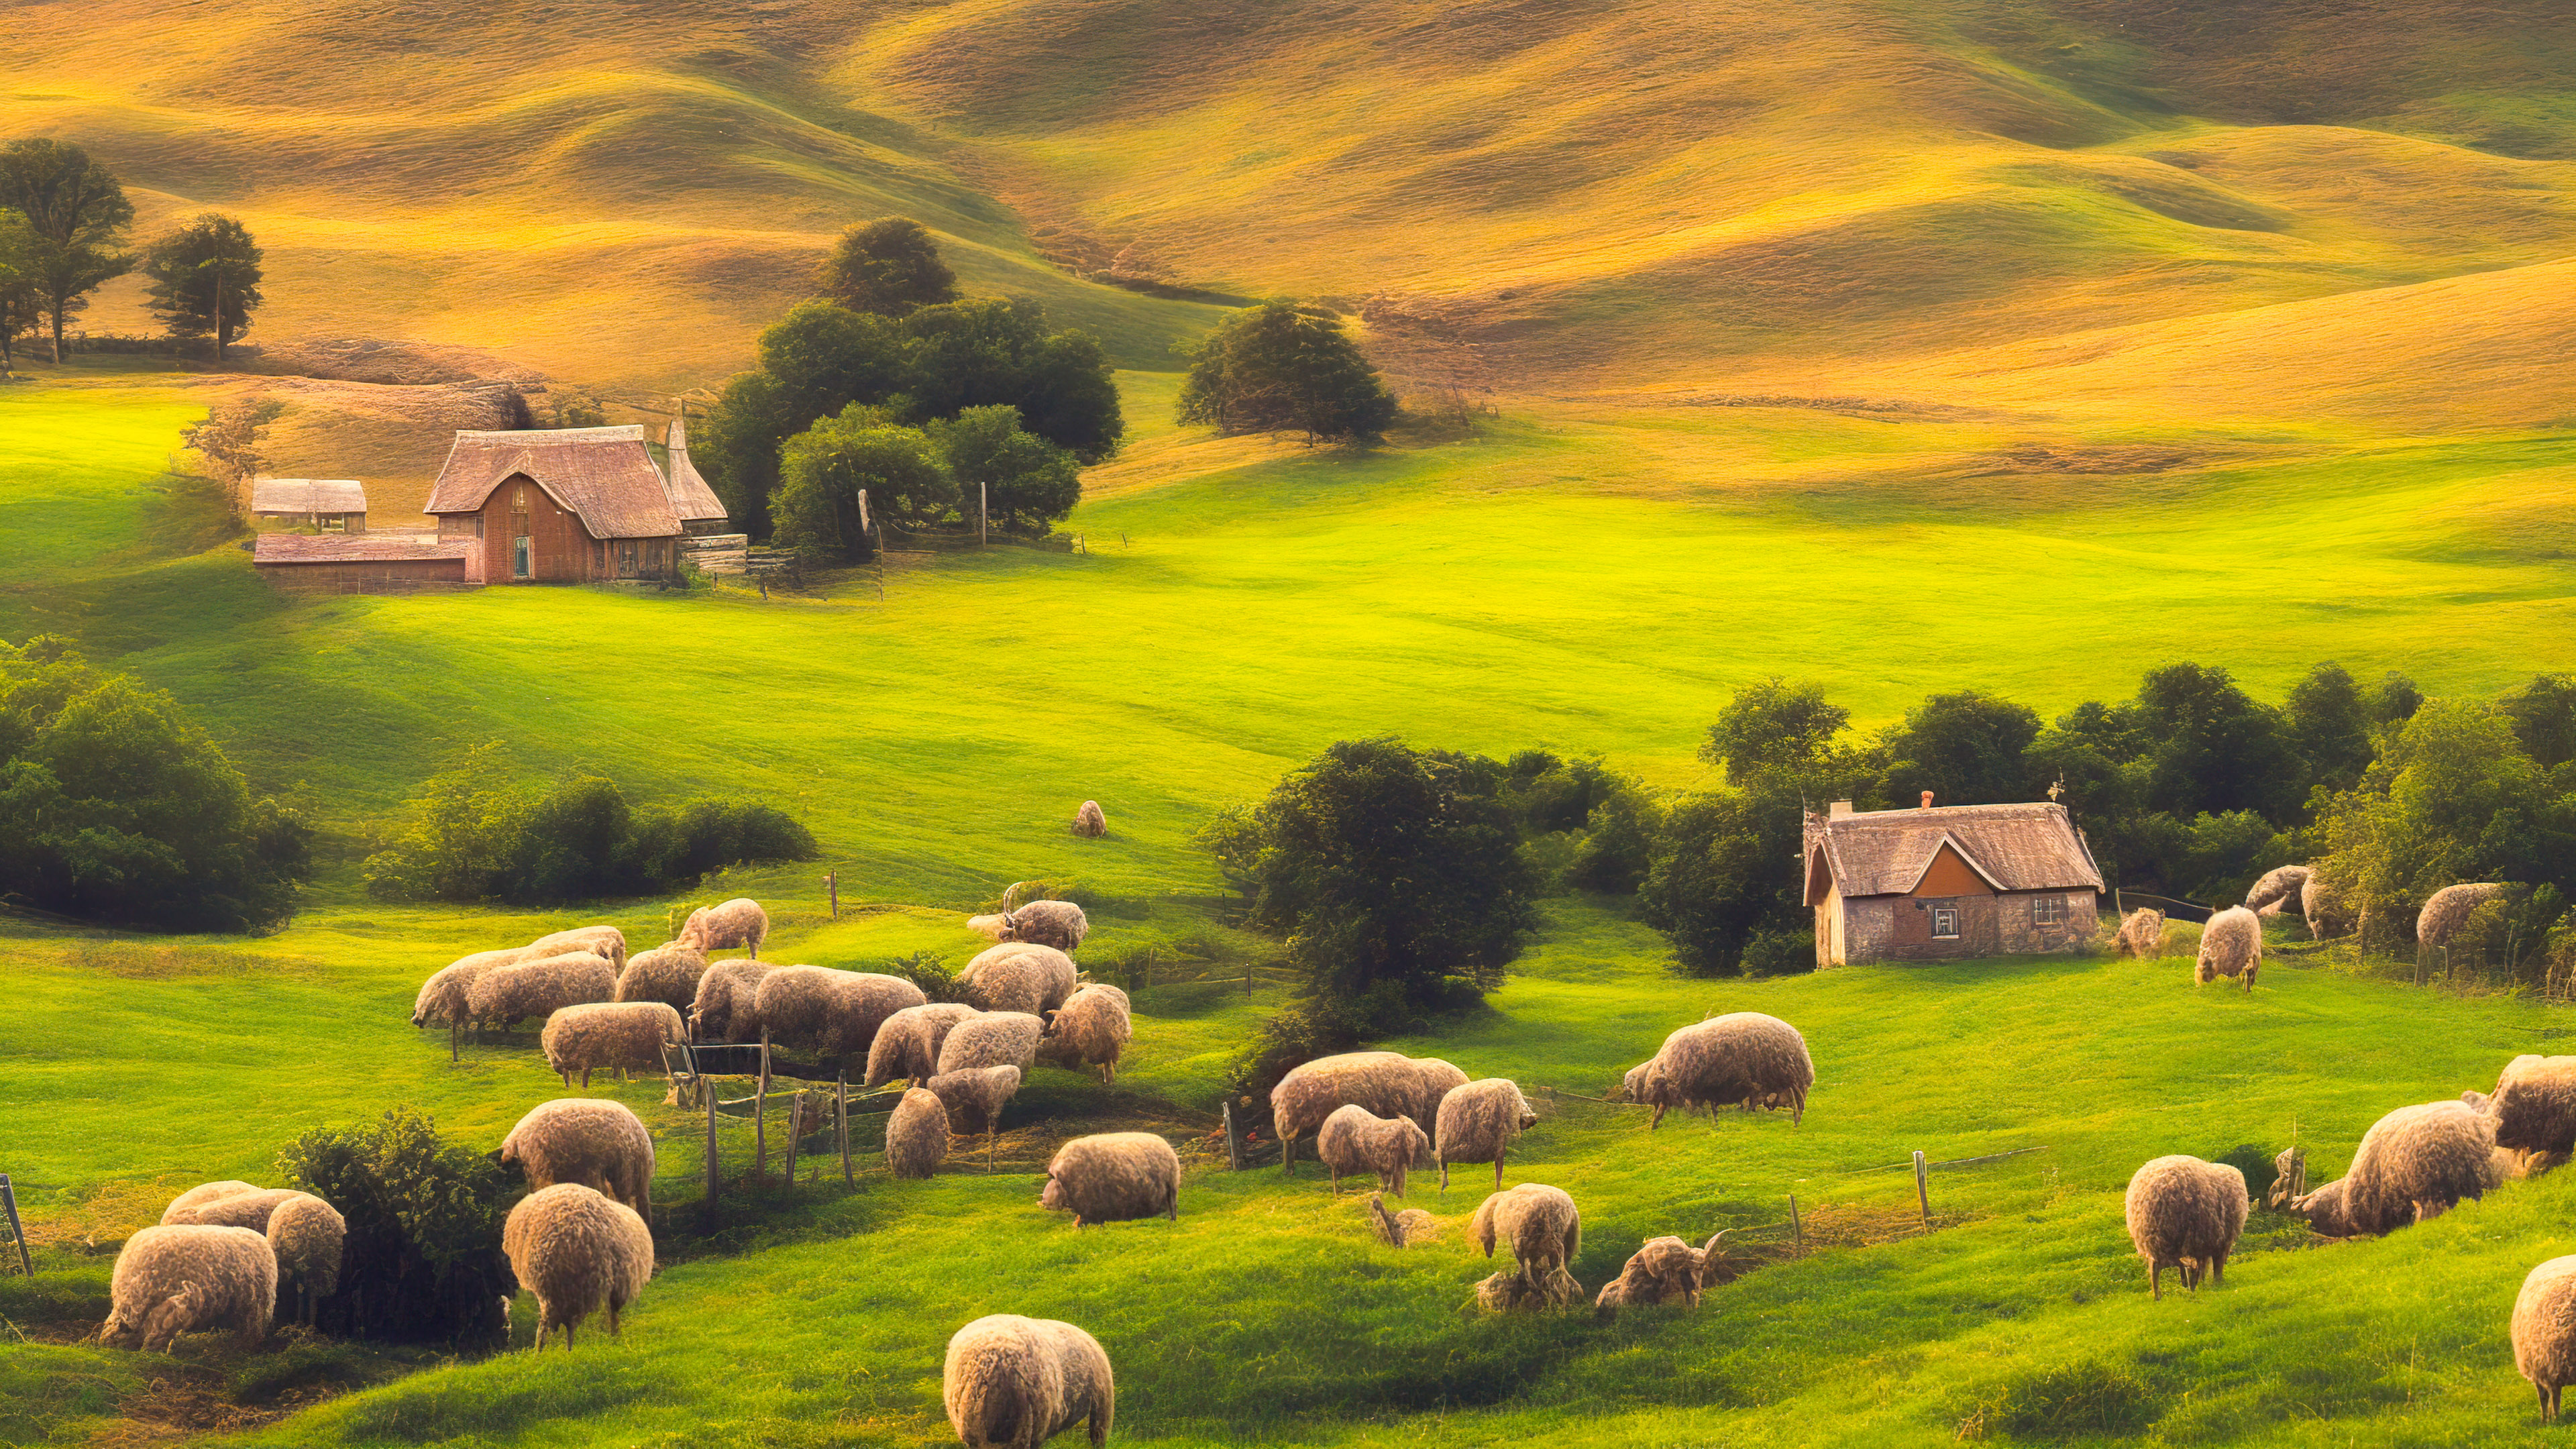 Téléchargez la sérénité de notre fond d'écran de paysage pour ordinateur de bureau en 4K, capturant un cottage paisible de campagne niché parmi des collines ondulantes, entouré de moutons qui paissent.